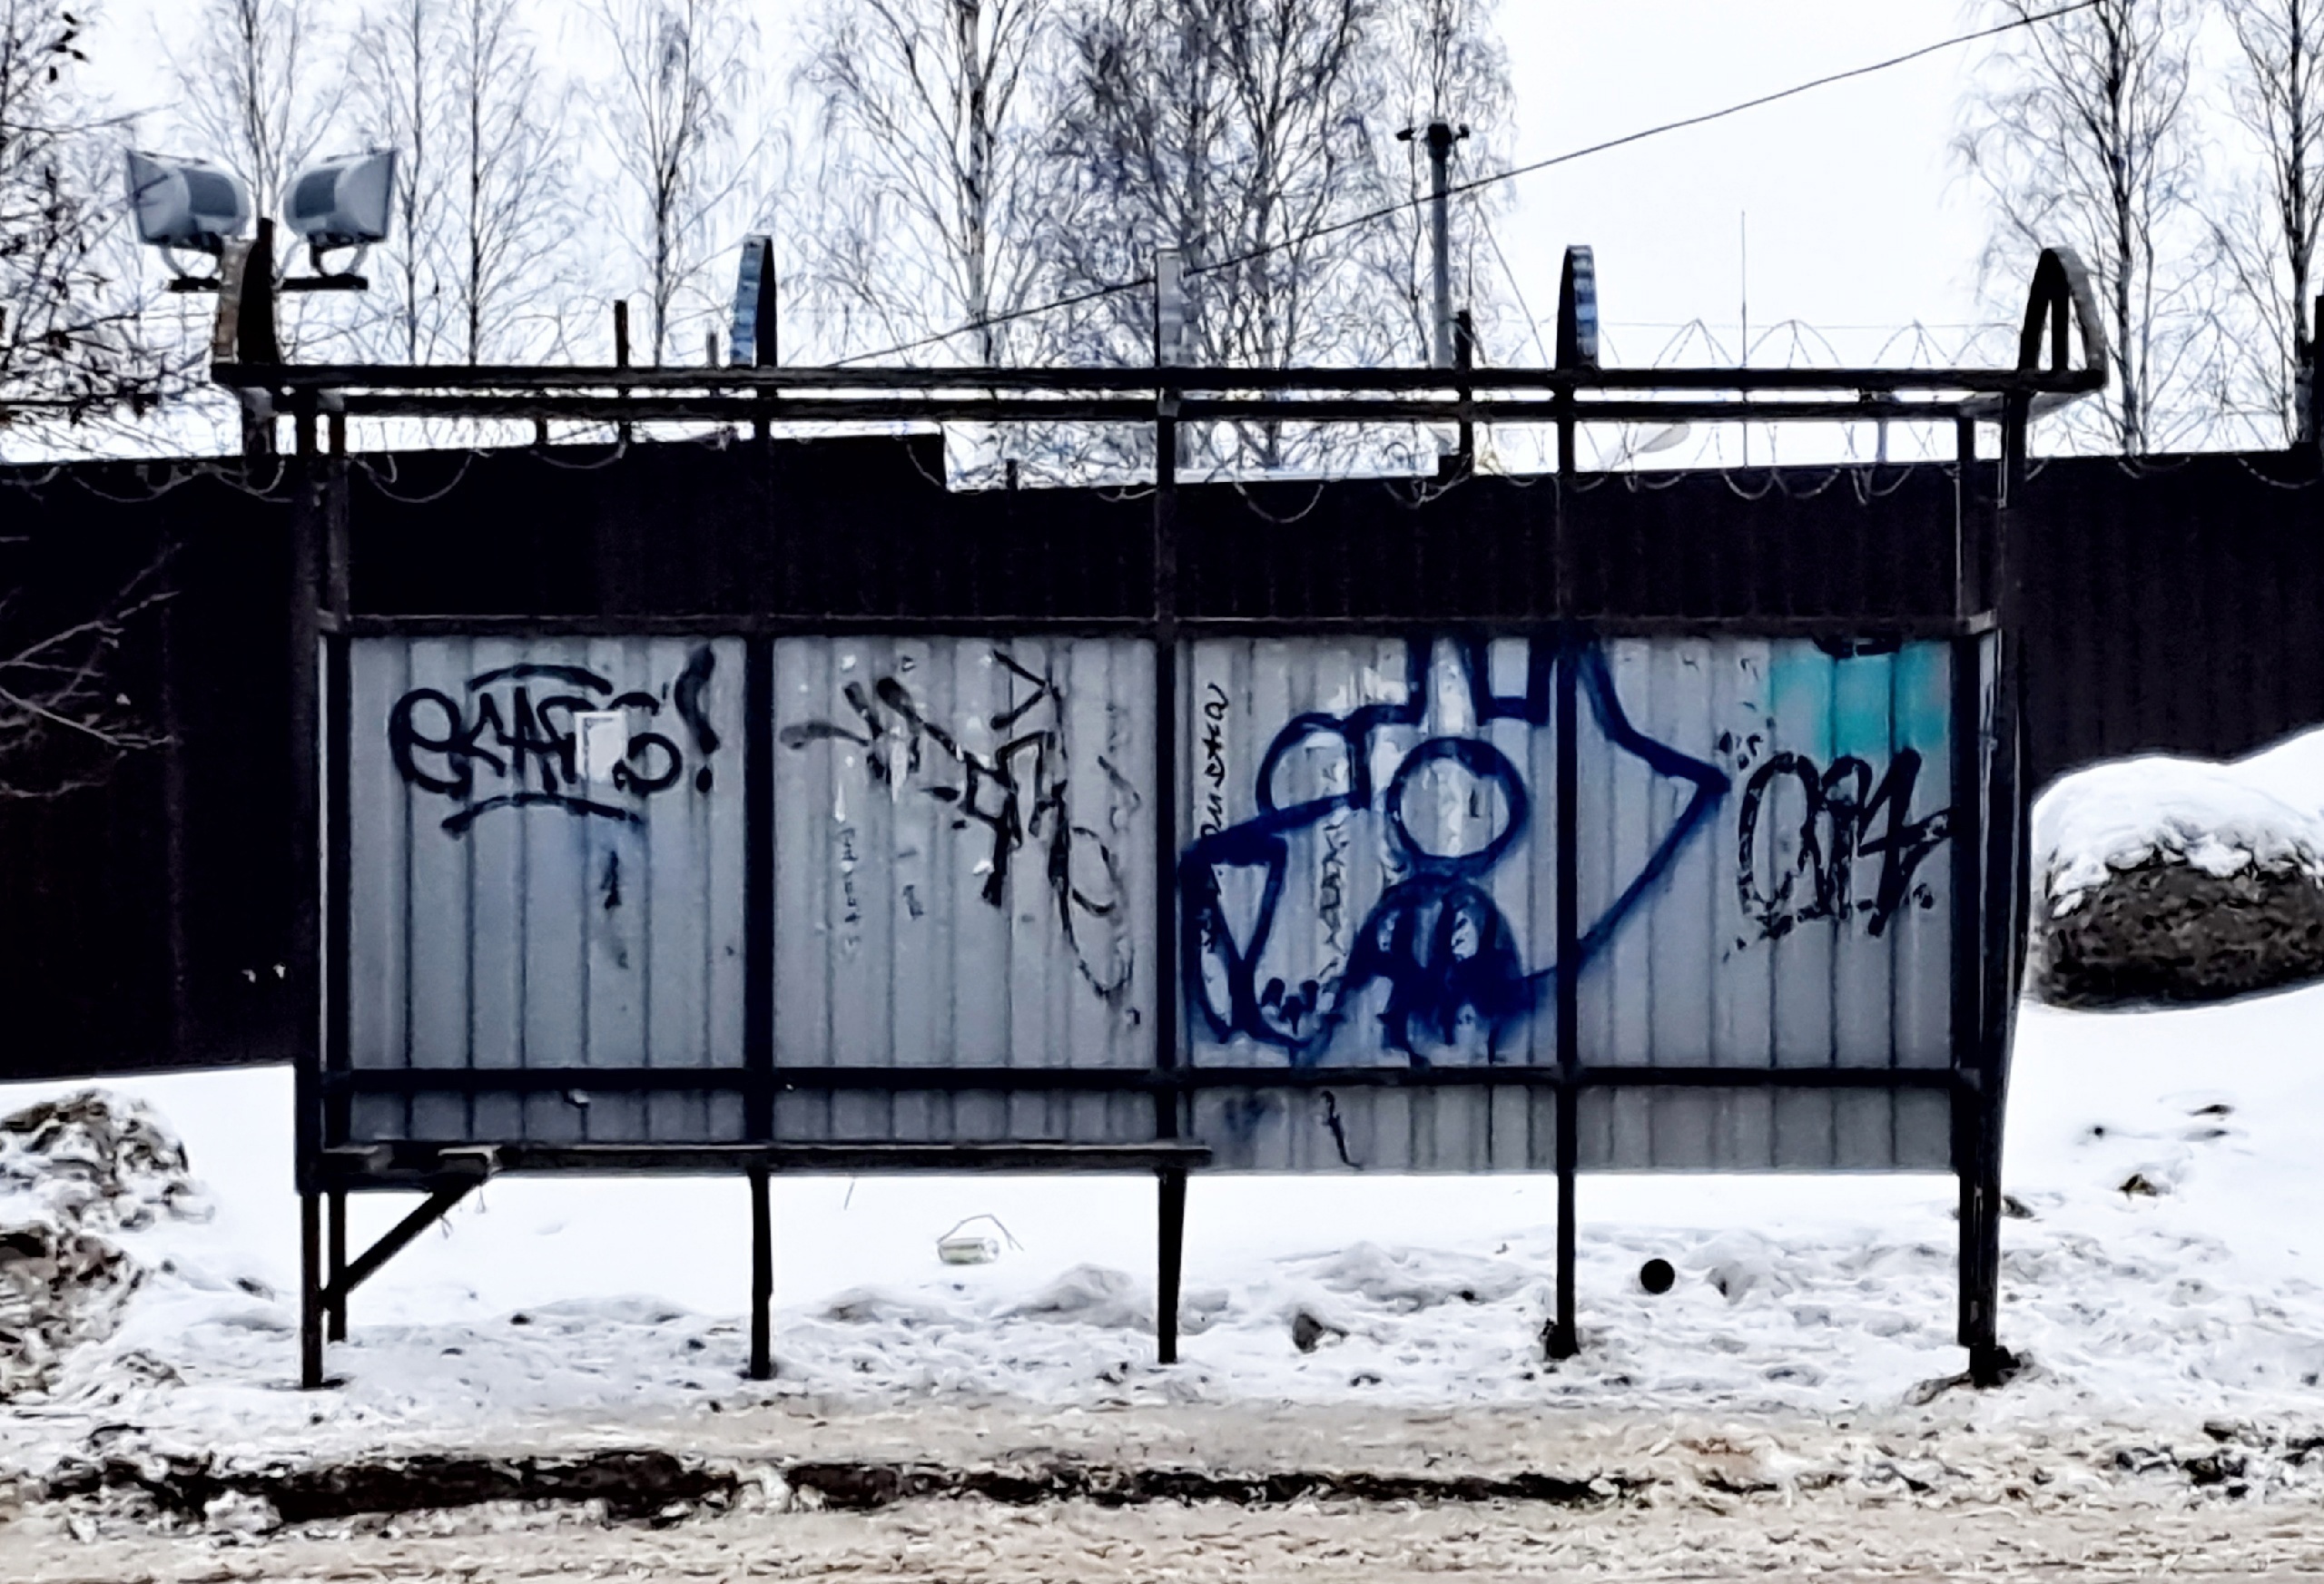 «Крышу на место!» — остановочный комплекс без крыши испытывает на прочность жителей Петрозаводска во время снега и ледяного дождя